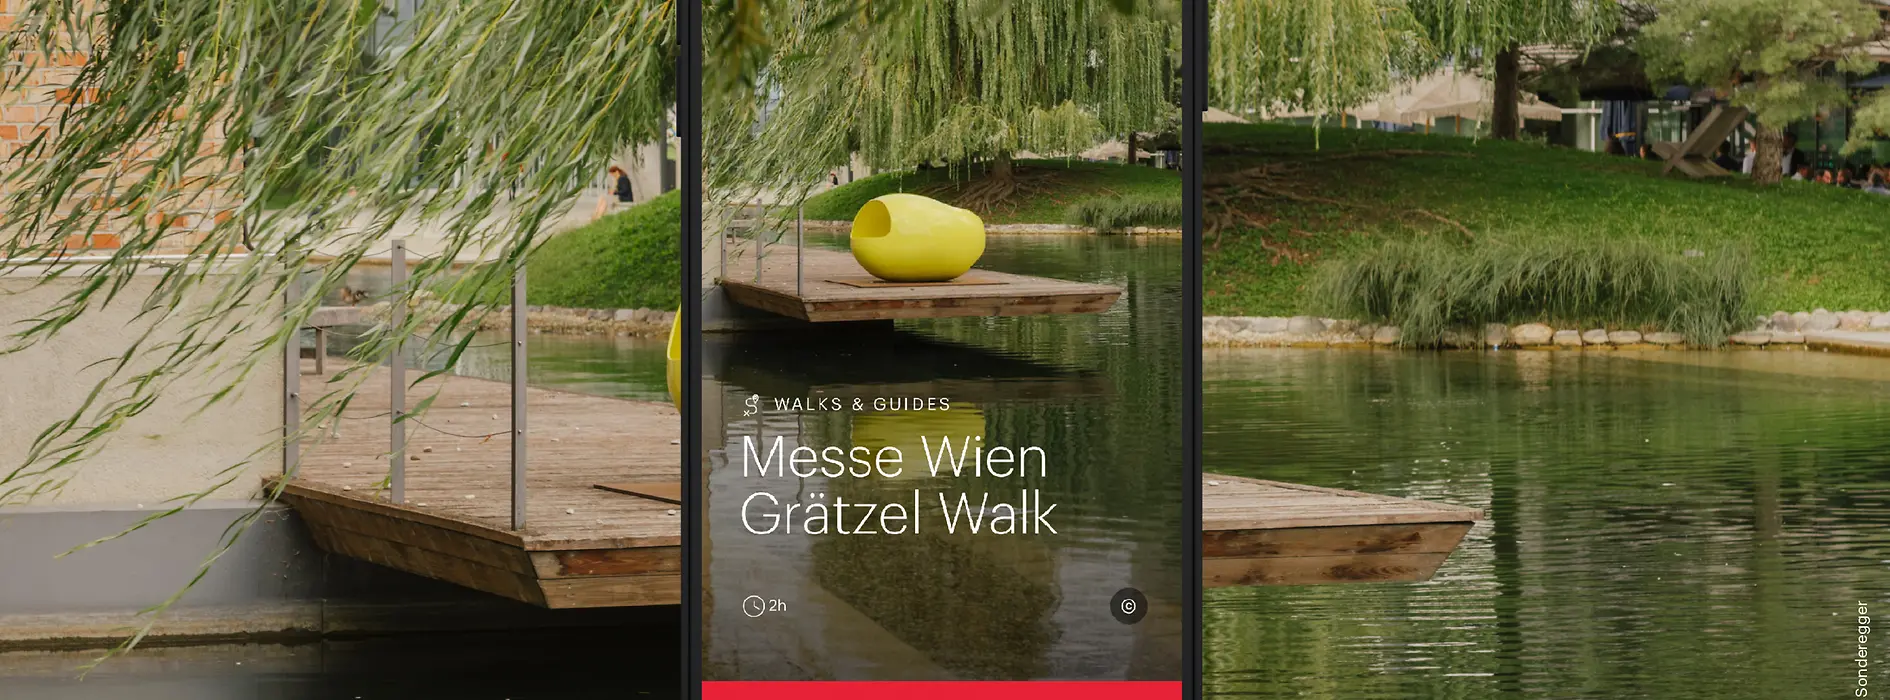 Soggetto pubblicitario ivie Messe Wien Grätzel Walk - superficie d’acqua con alberi e oggetti d’arte